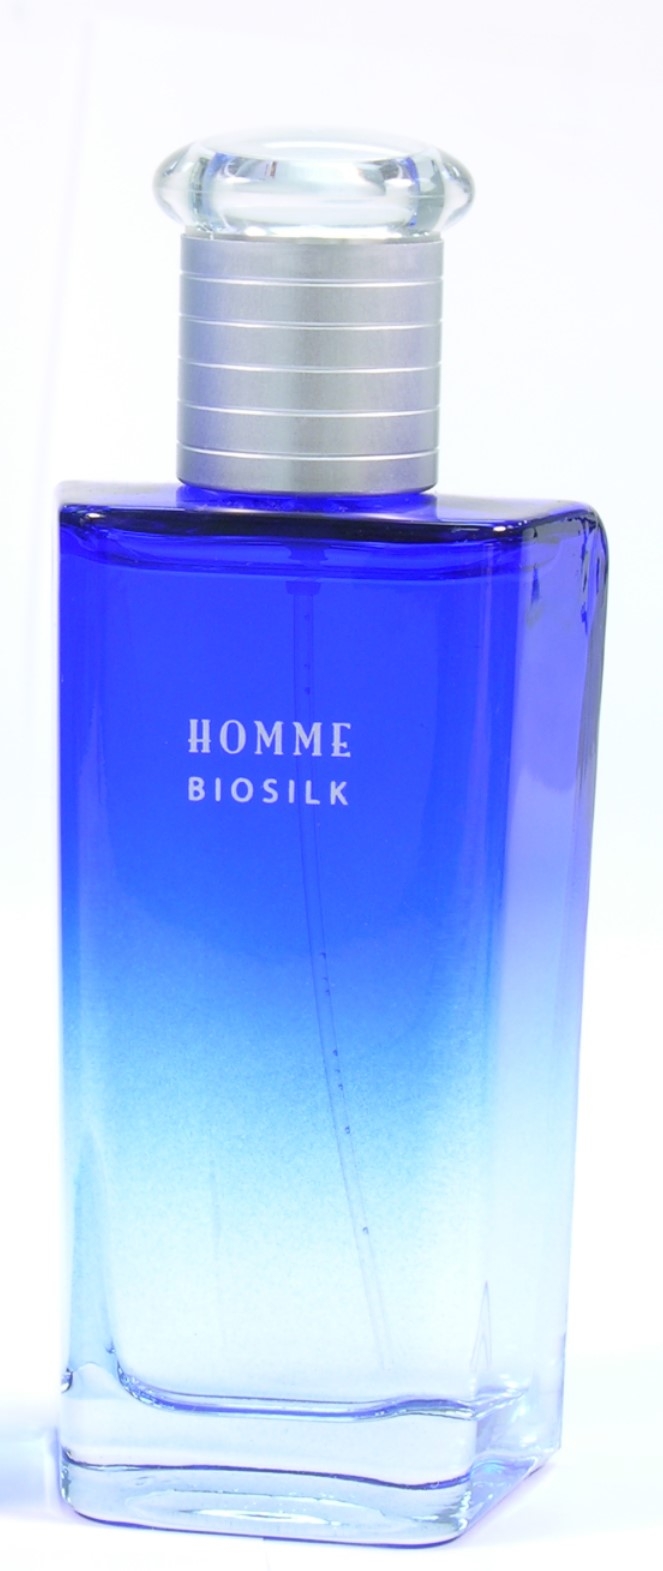 BioSilk Homme, en elegant Eau de Parfum - til han! 